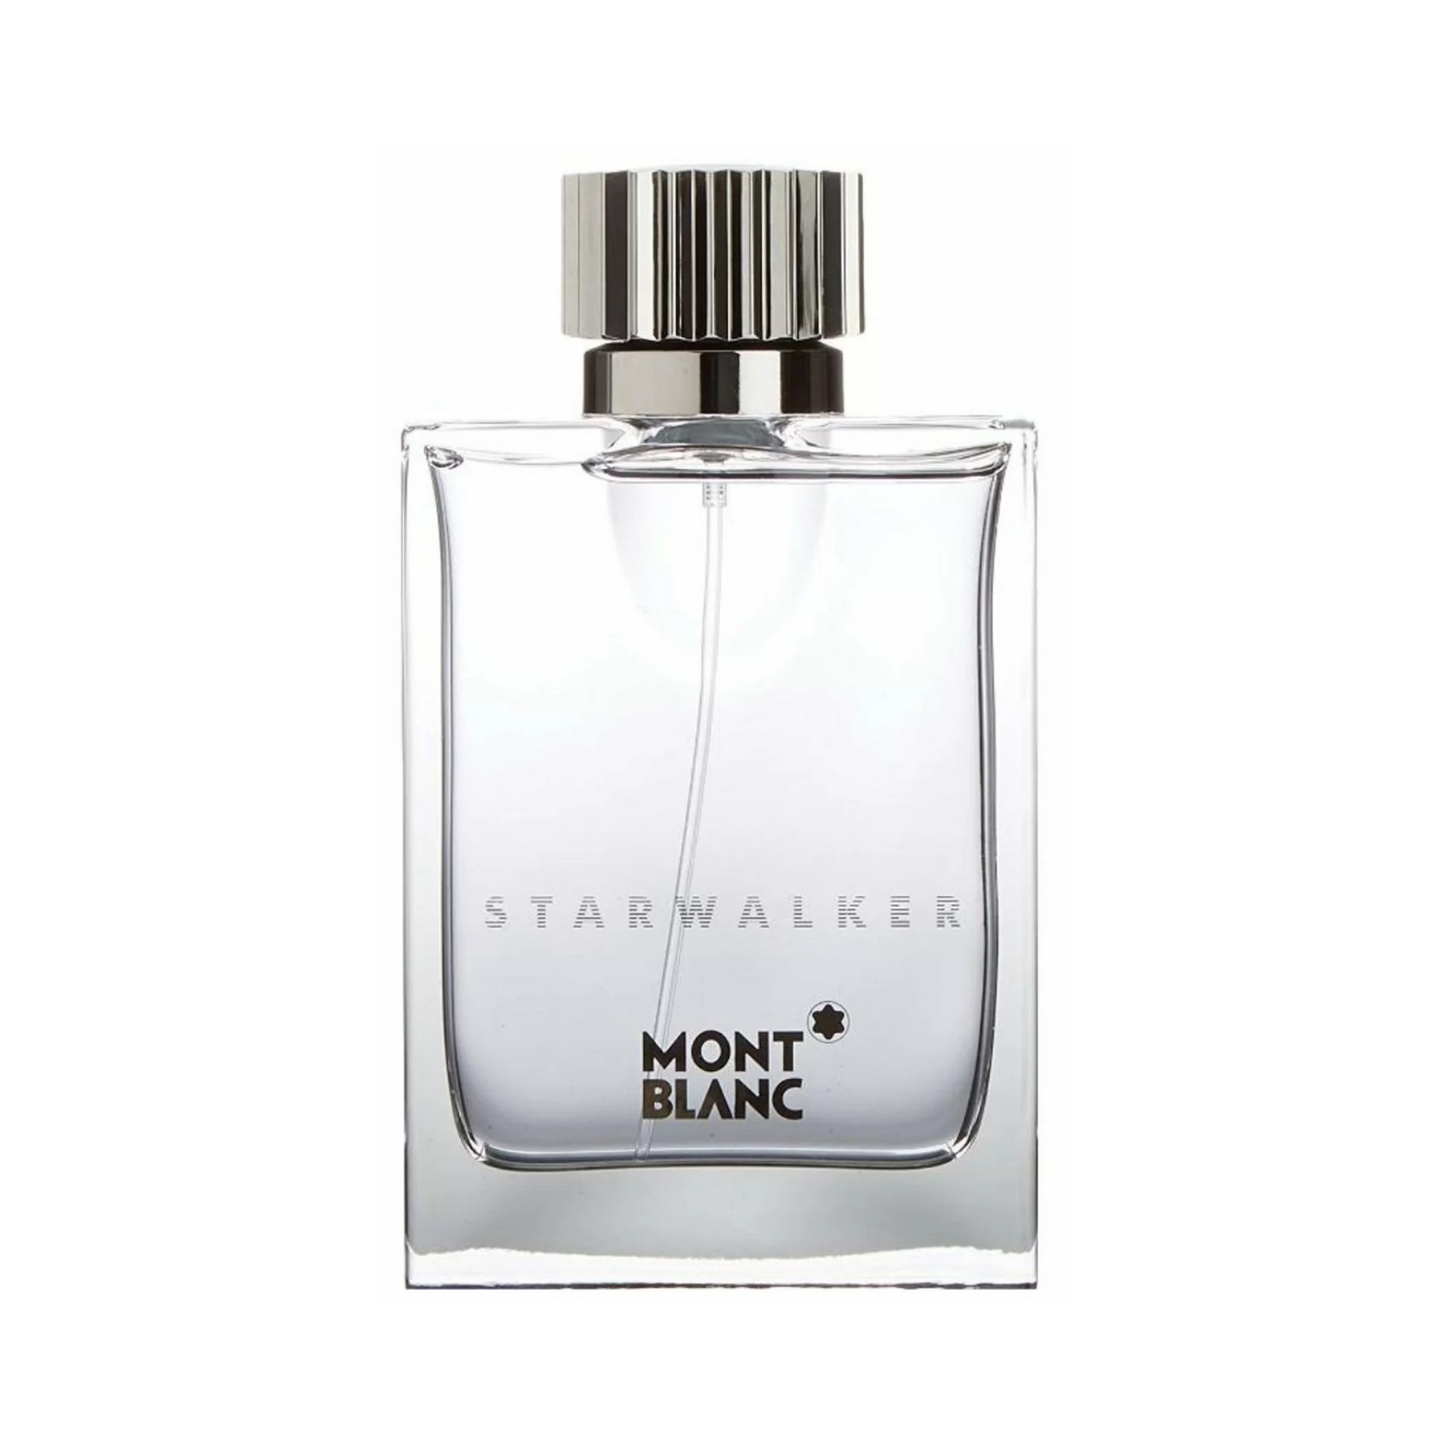 Mont Blanc Starwalker Men type Perfume for Men